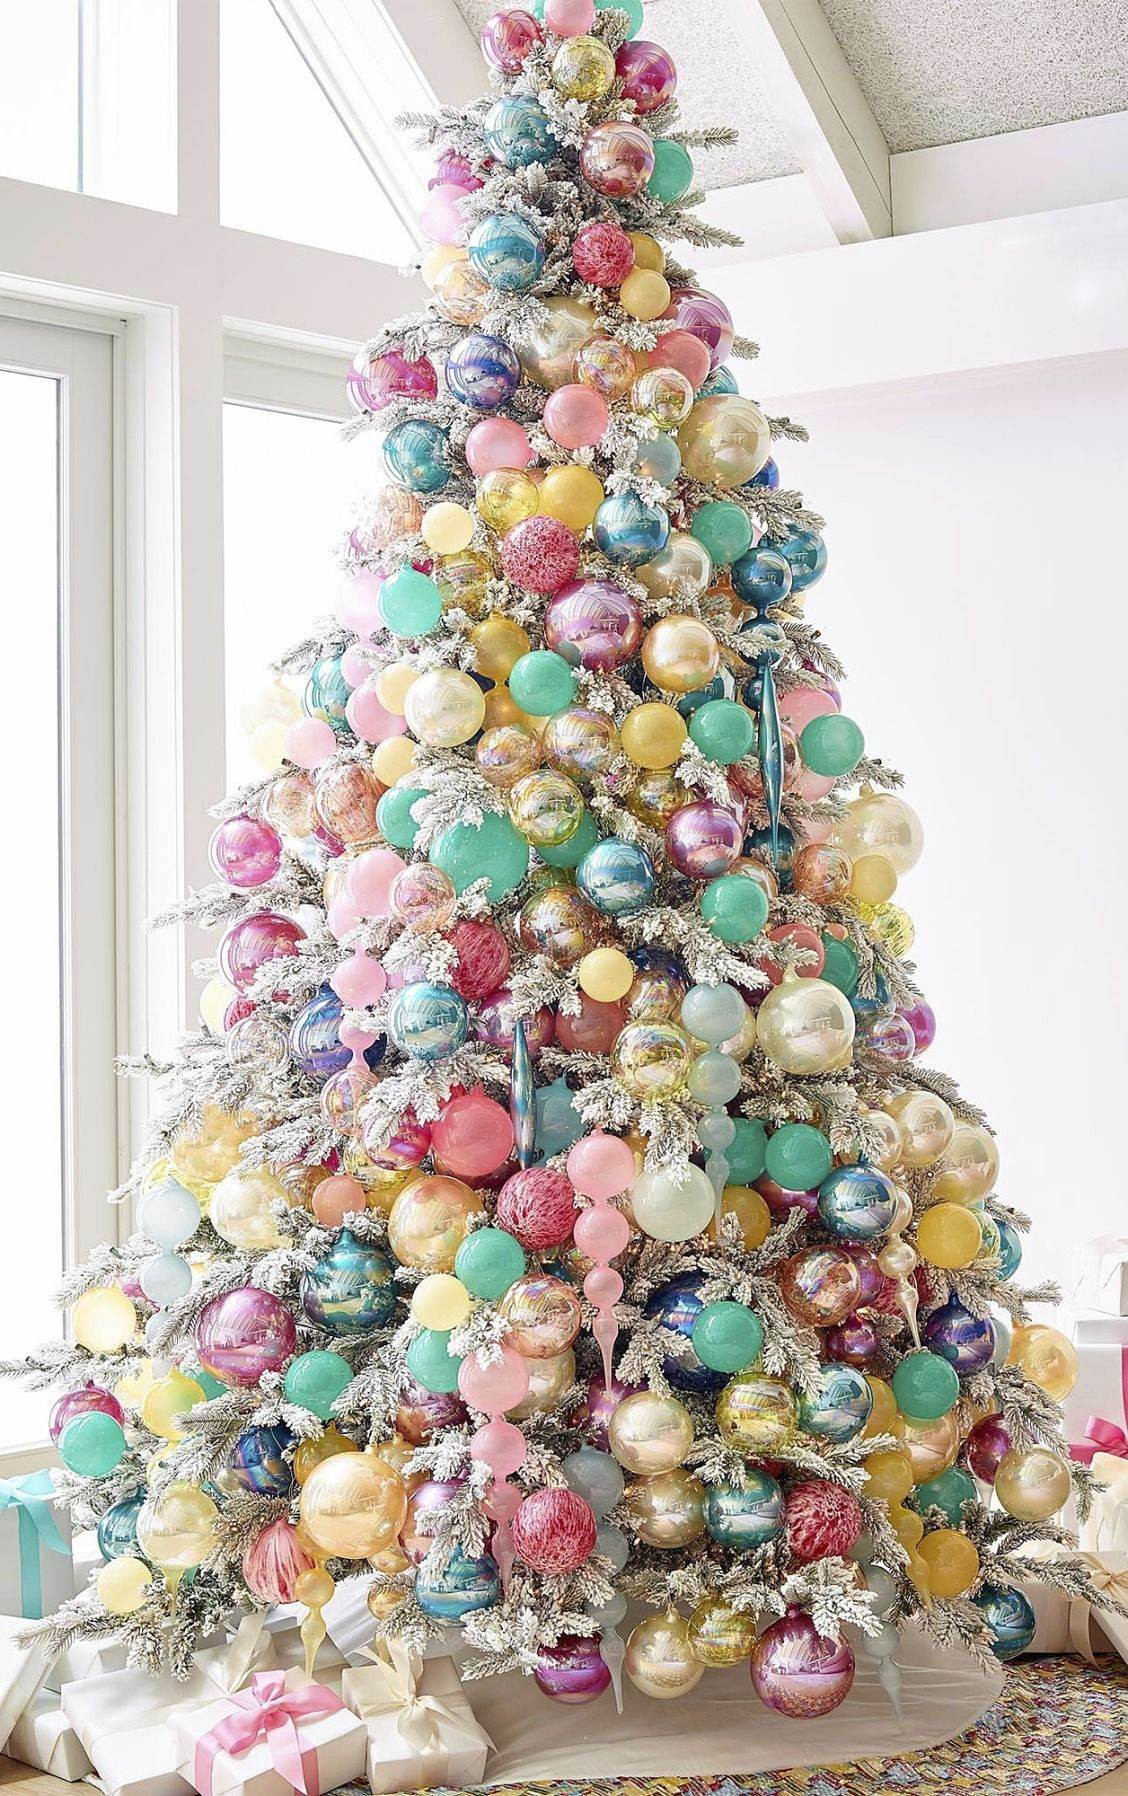 DIY Christmas Decorations Martha Stewart
 Diy Christmas ornaments Martha Stewart Inspirational